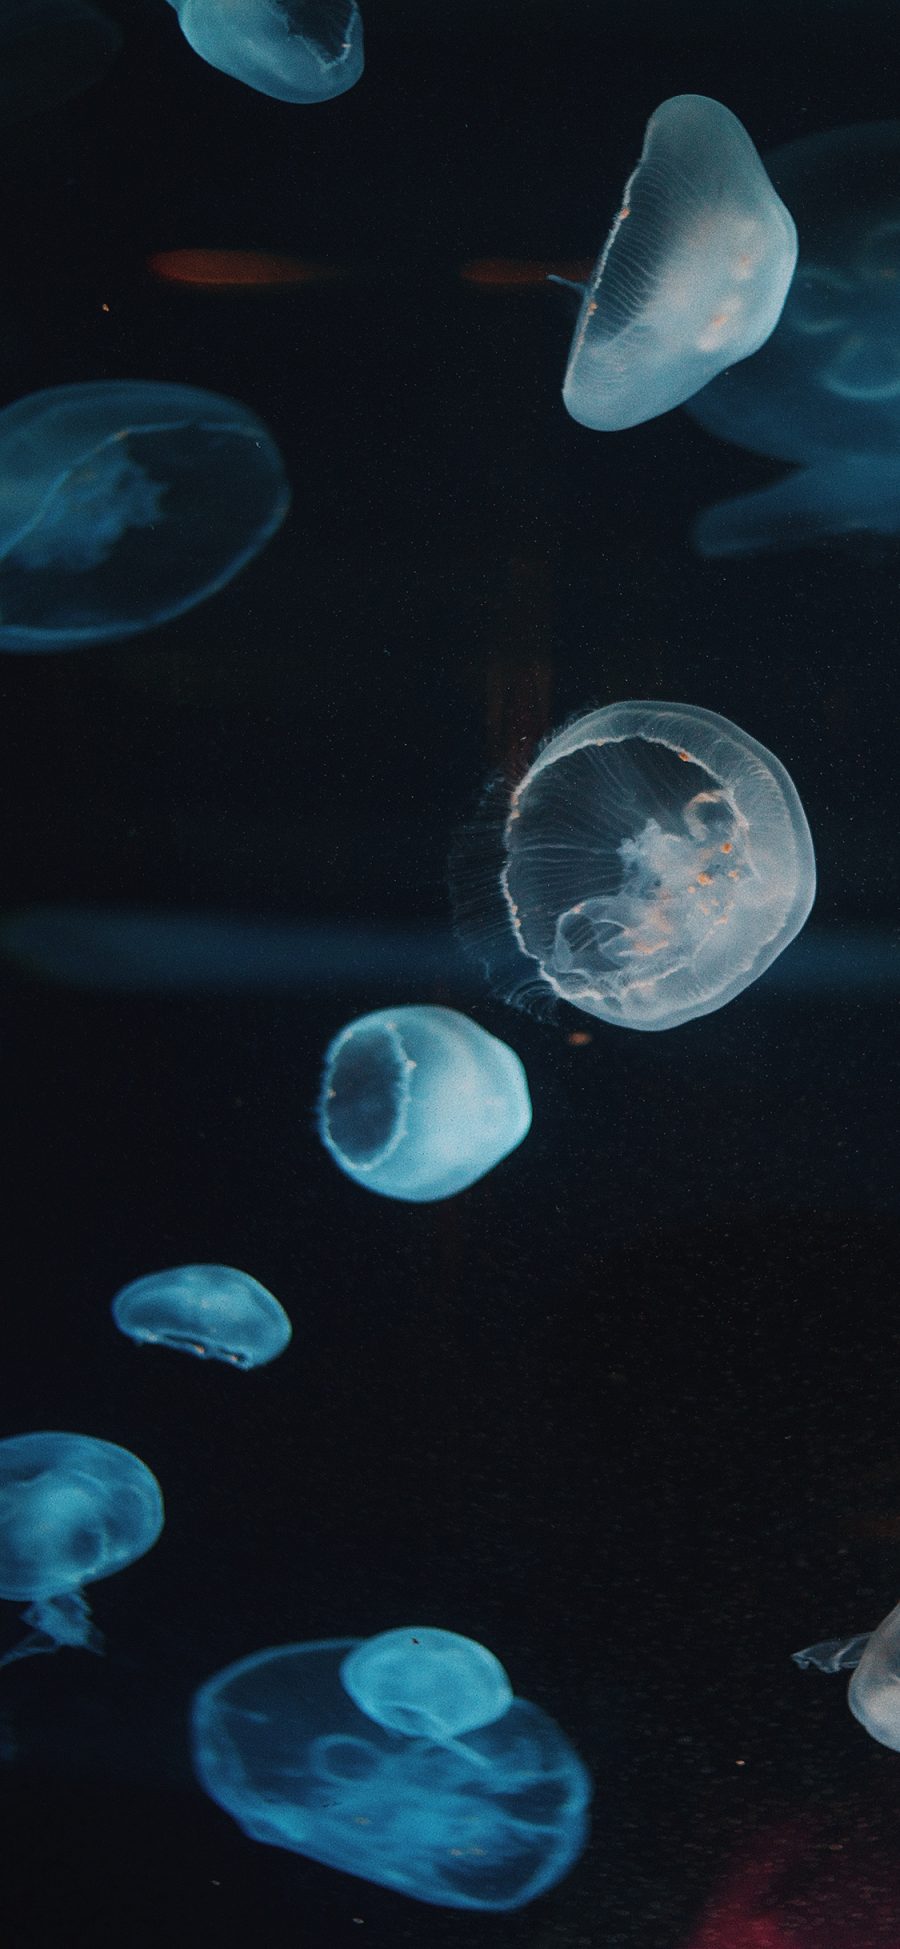 [2436×1125]水母 海洋生物 海底 漂浮 苹果手机壁纸图片